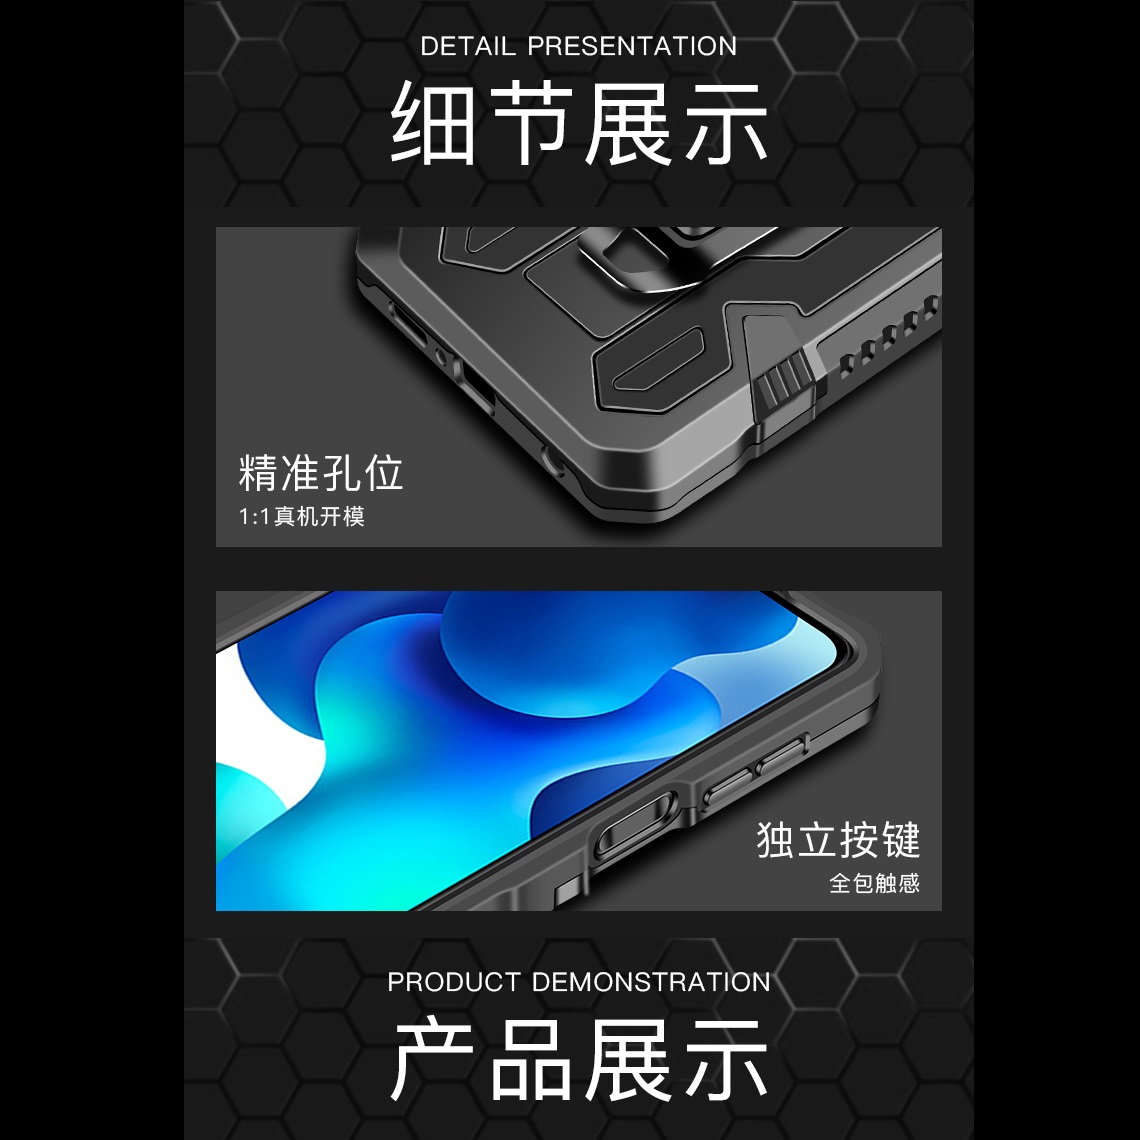 کاور آرمور مدل KICK45 مناسب برای گوشی موبایل شیائومی Redmi Note 9s / Note 9 Pro